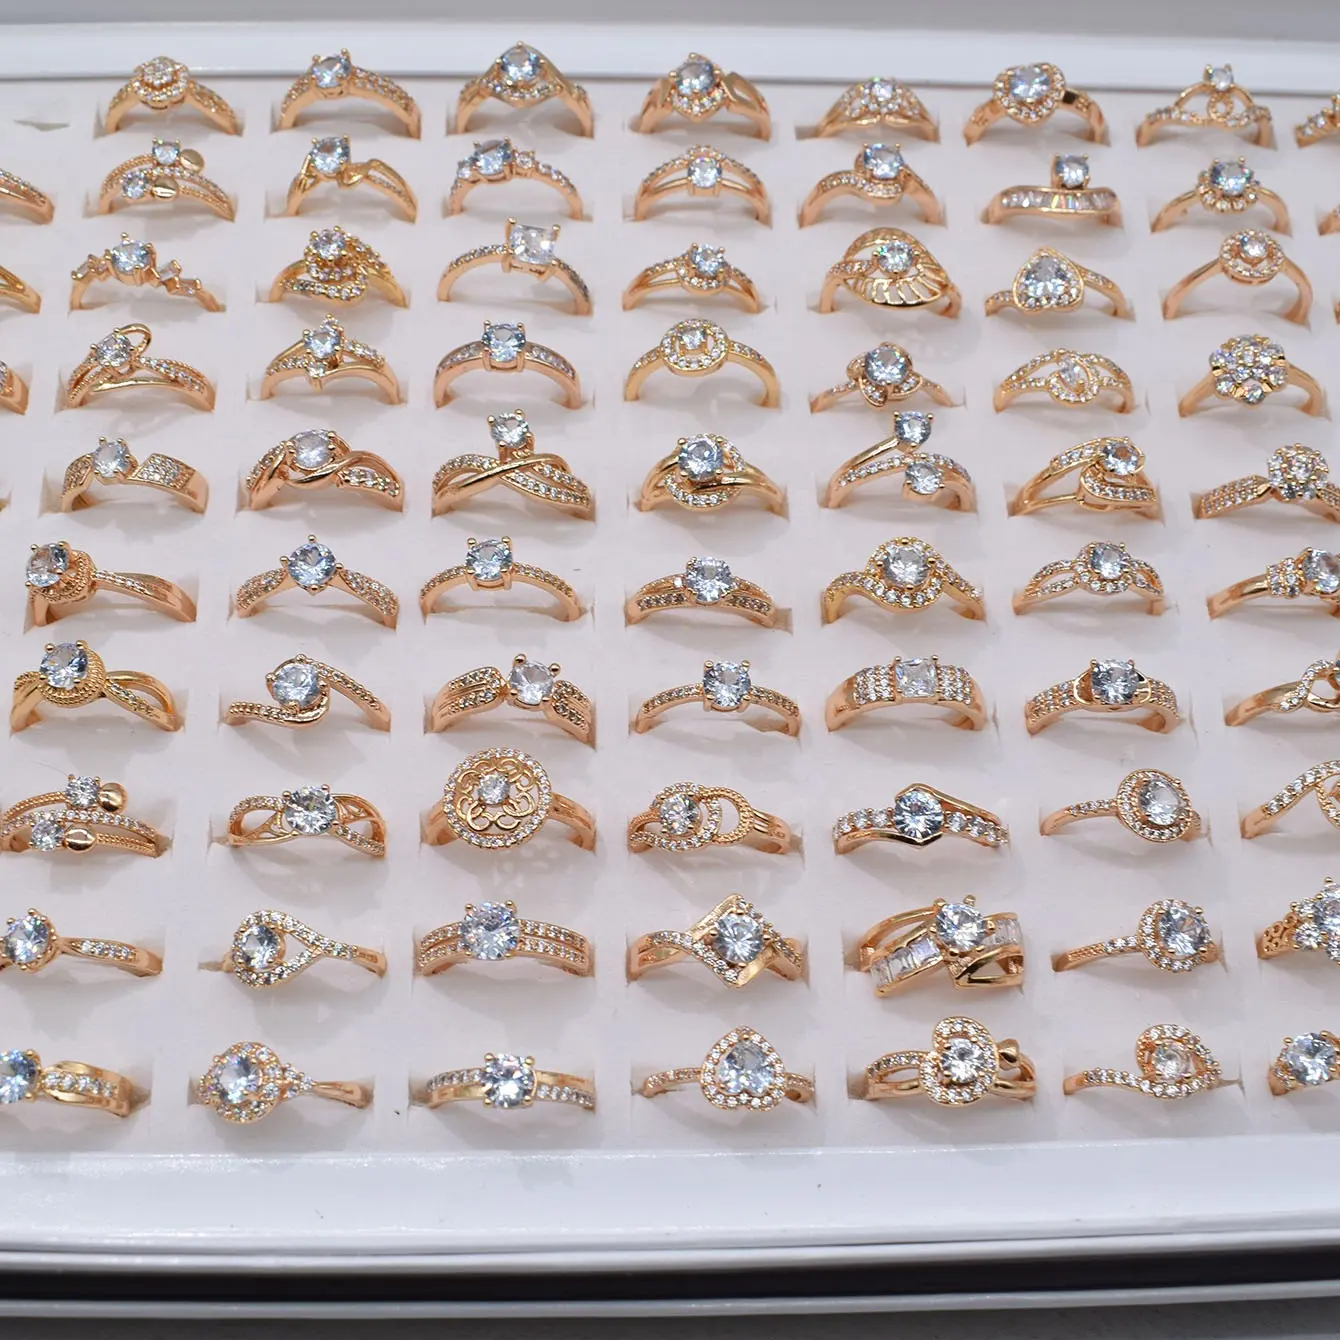 Оптовая продажа обручальное кольцо обручальные кольца женские ювелирные изделия из золота 18 карат с твердым покрытием Алмазный Набор обручальных колец